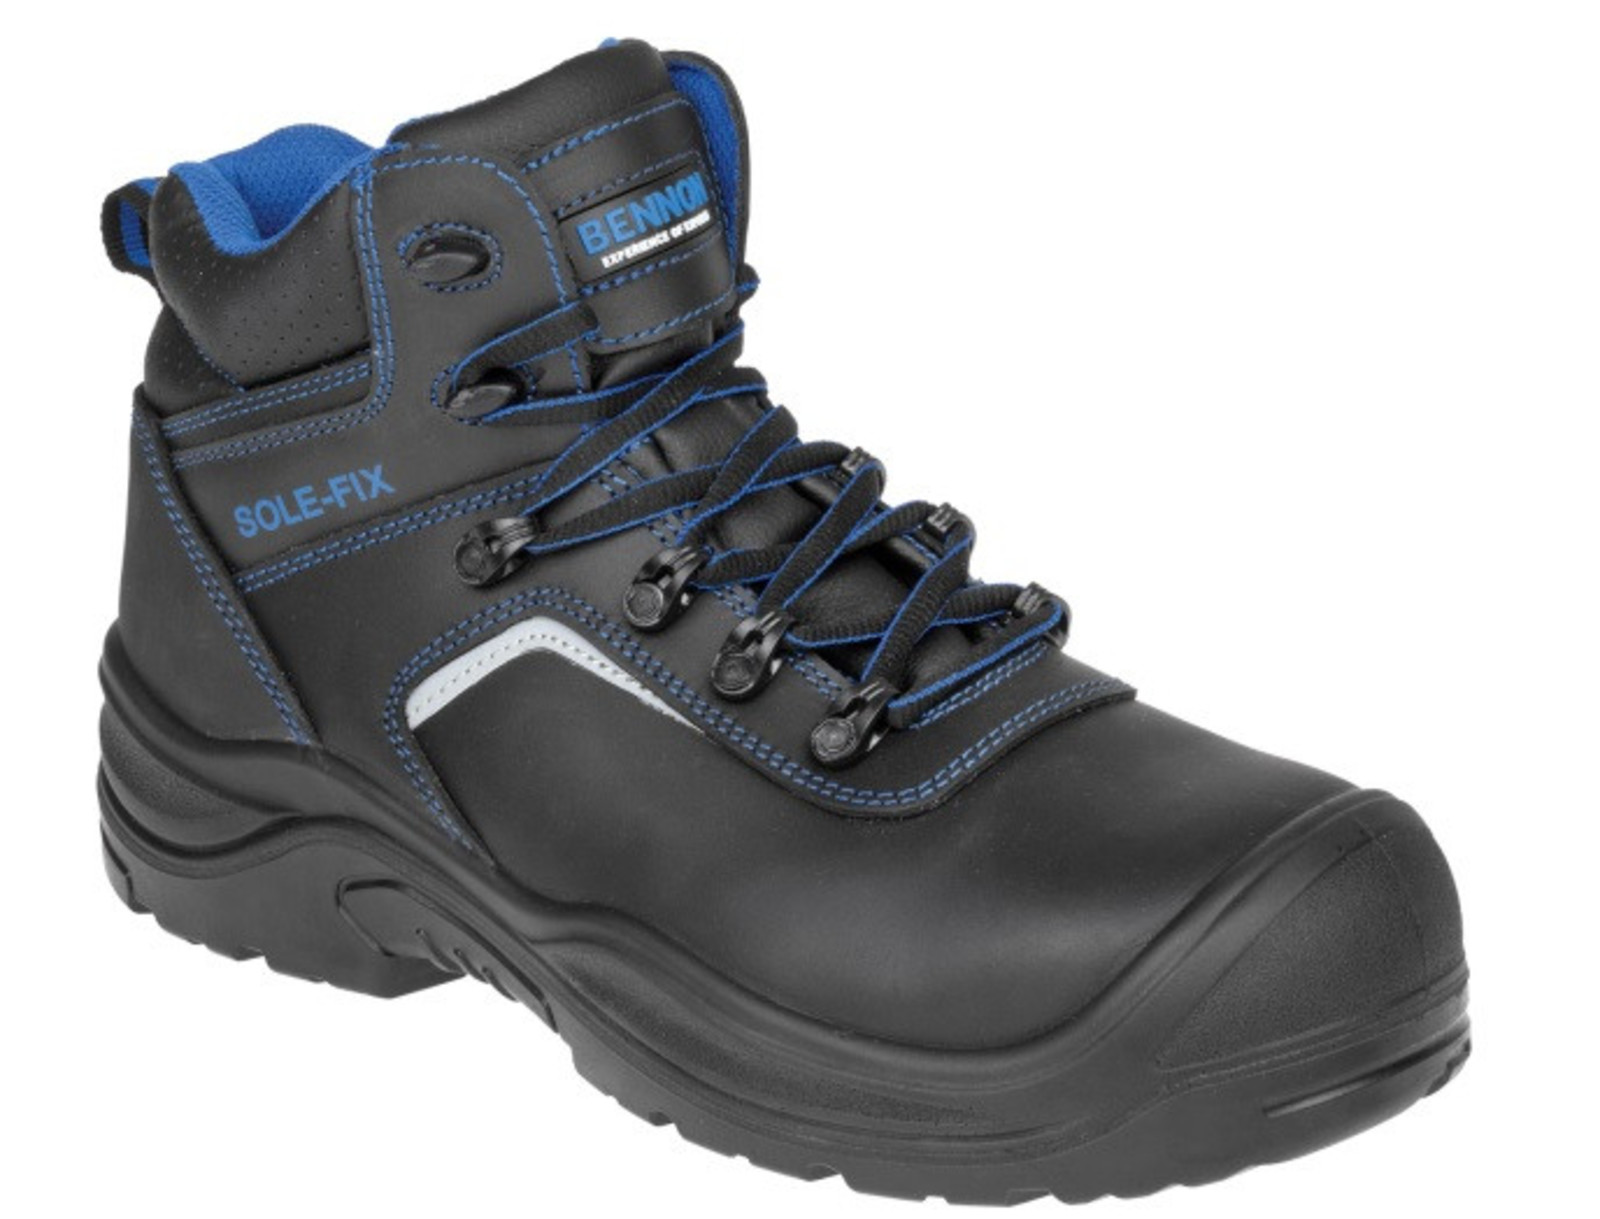 Bezpečnostná obuv Bennon Raptor S3 - veľkosť: 45, farba: čierna/modrá